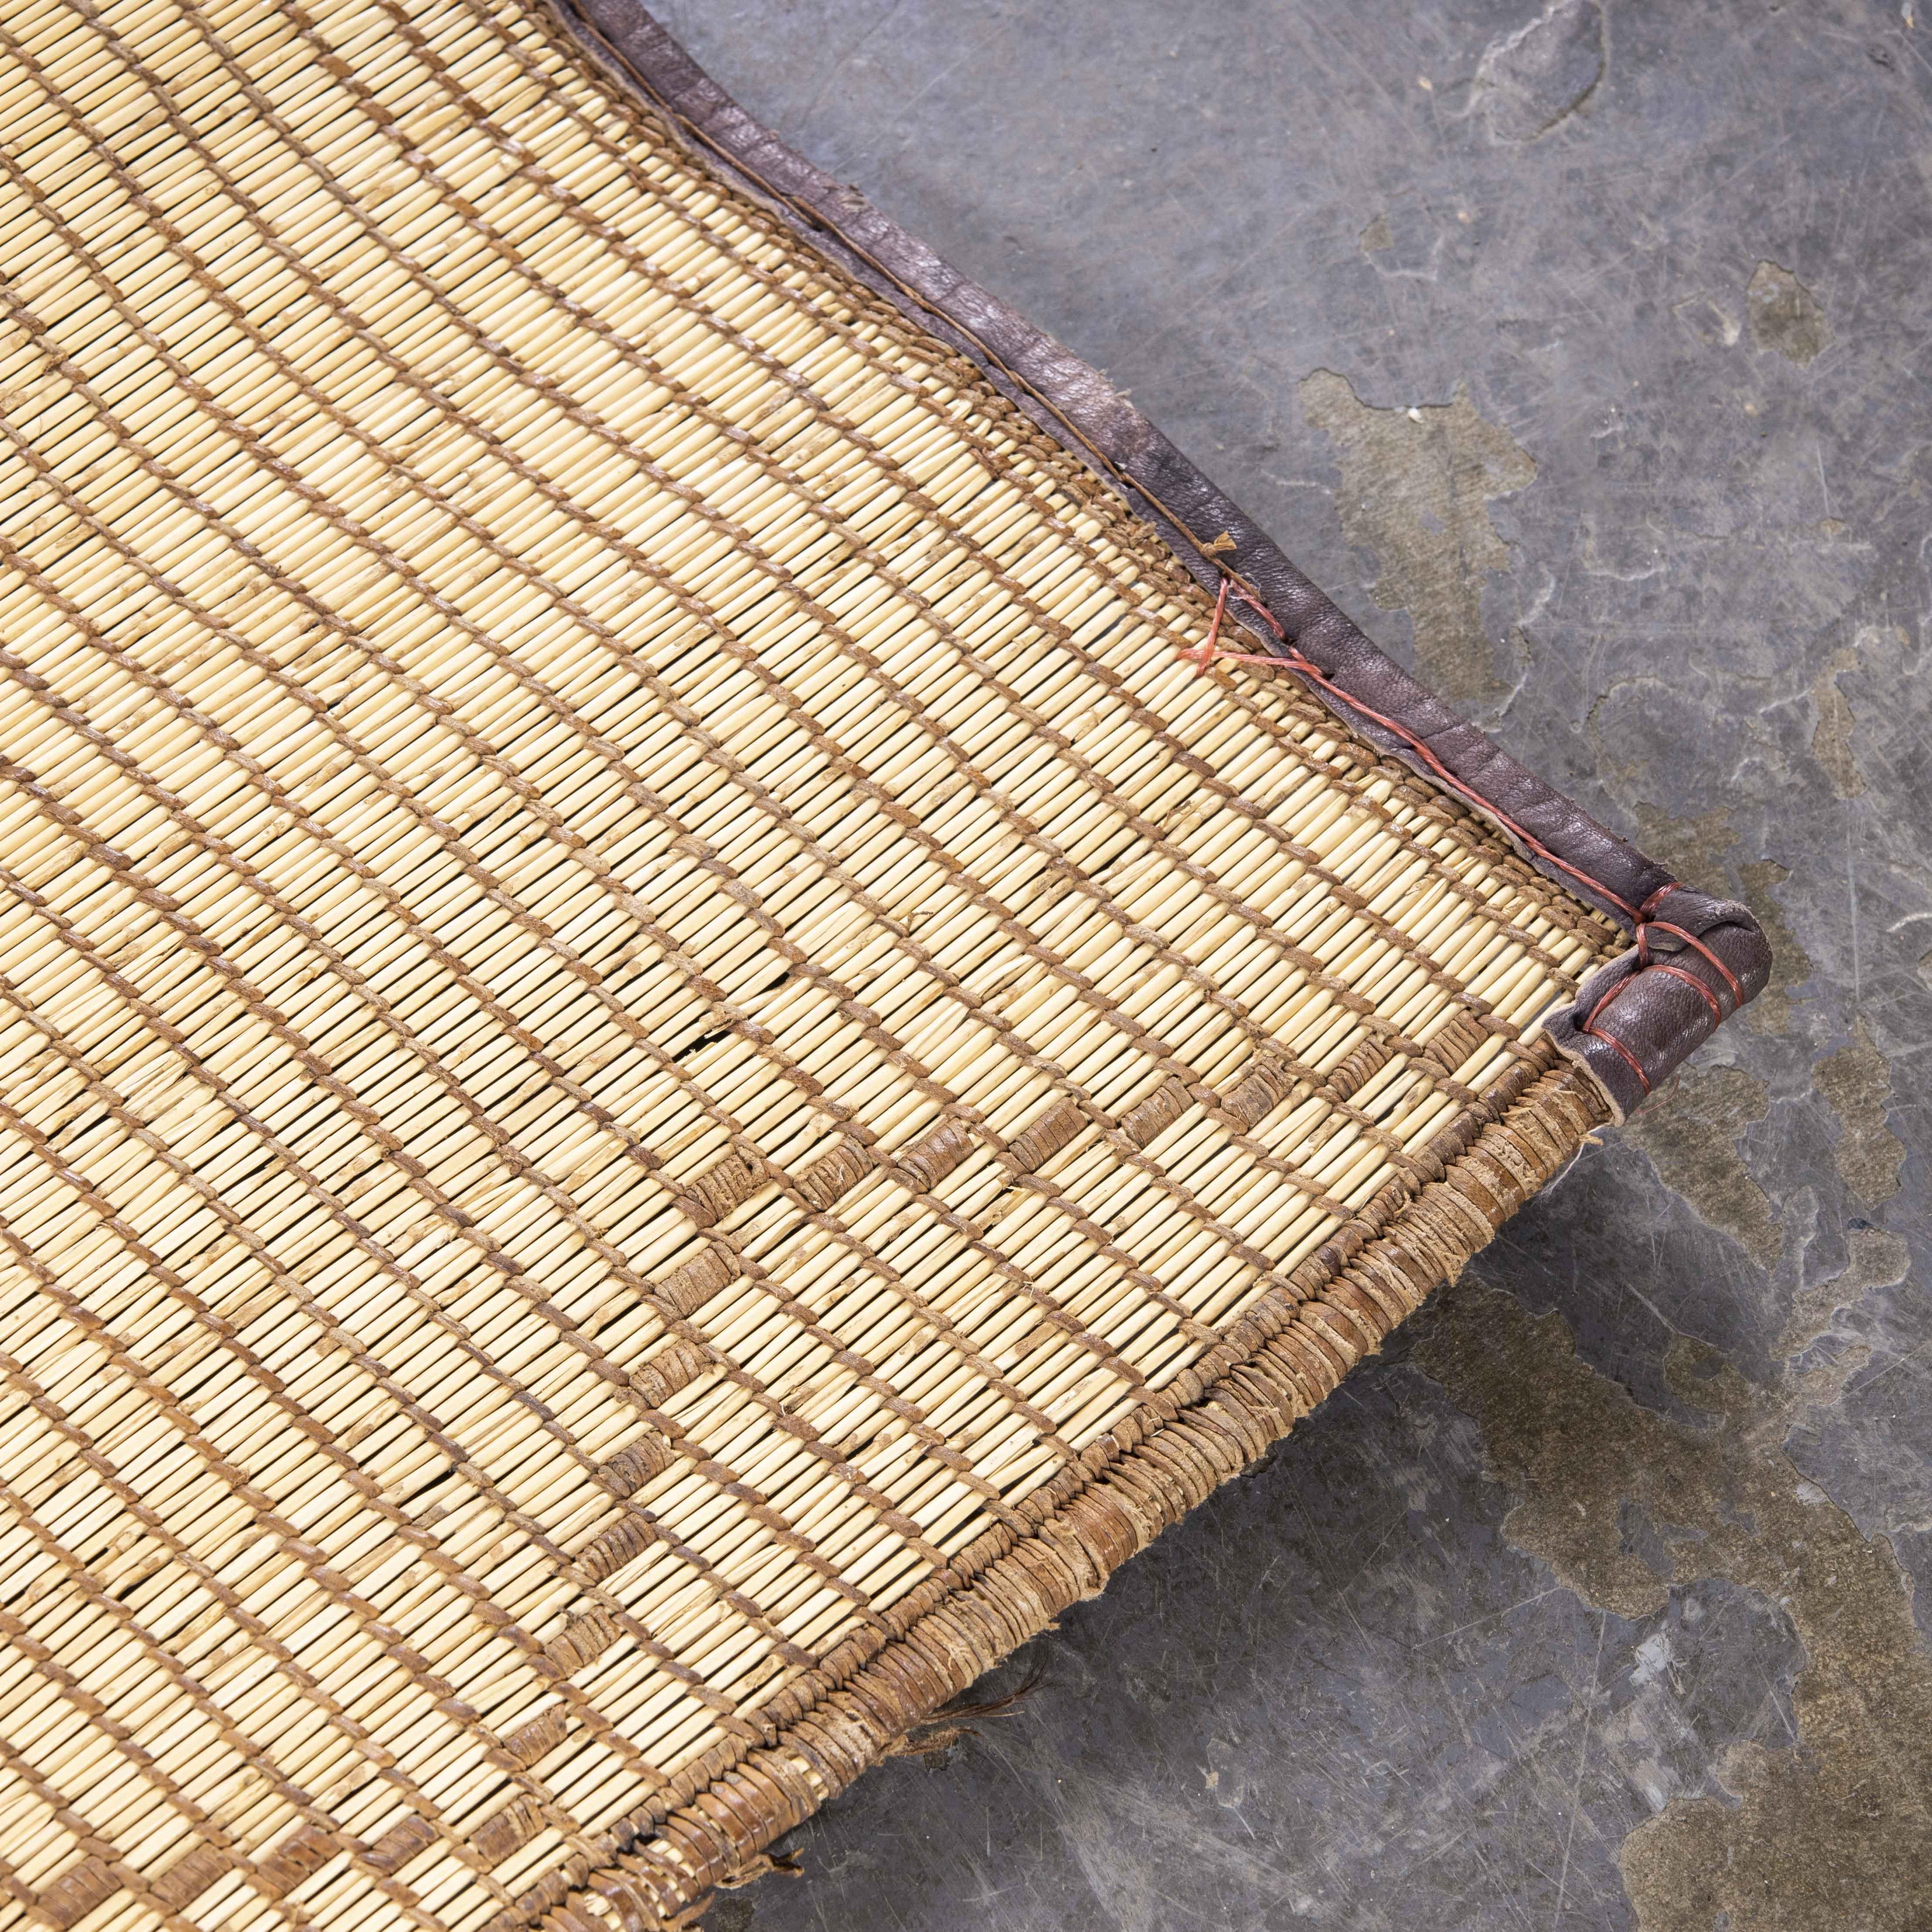 Vintage sehr große Licht tuareg Fußmatte - fünf Meter.
Vintage sehr große Licht tuareg Fußmatte - fünf Meter. Tuareg-Teppiche oder flachgewebte Matten sind selten und sehr speziell. Sie werden aus feinem Grasschilf hergestellt und mit Ziegen- oder